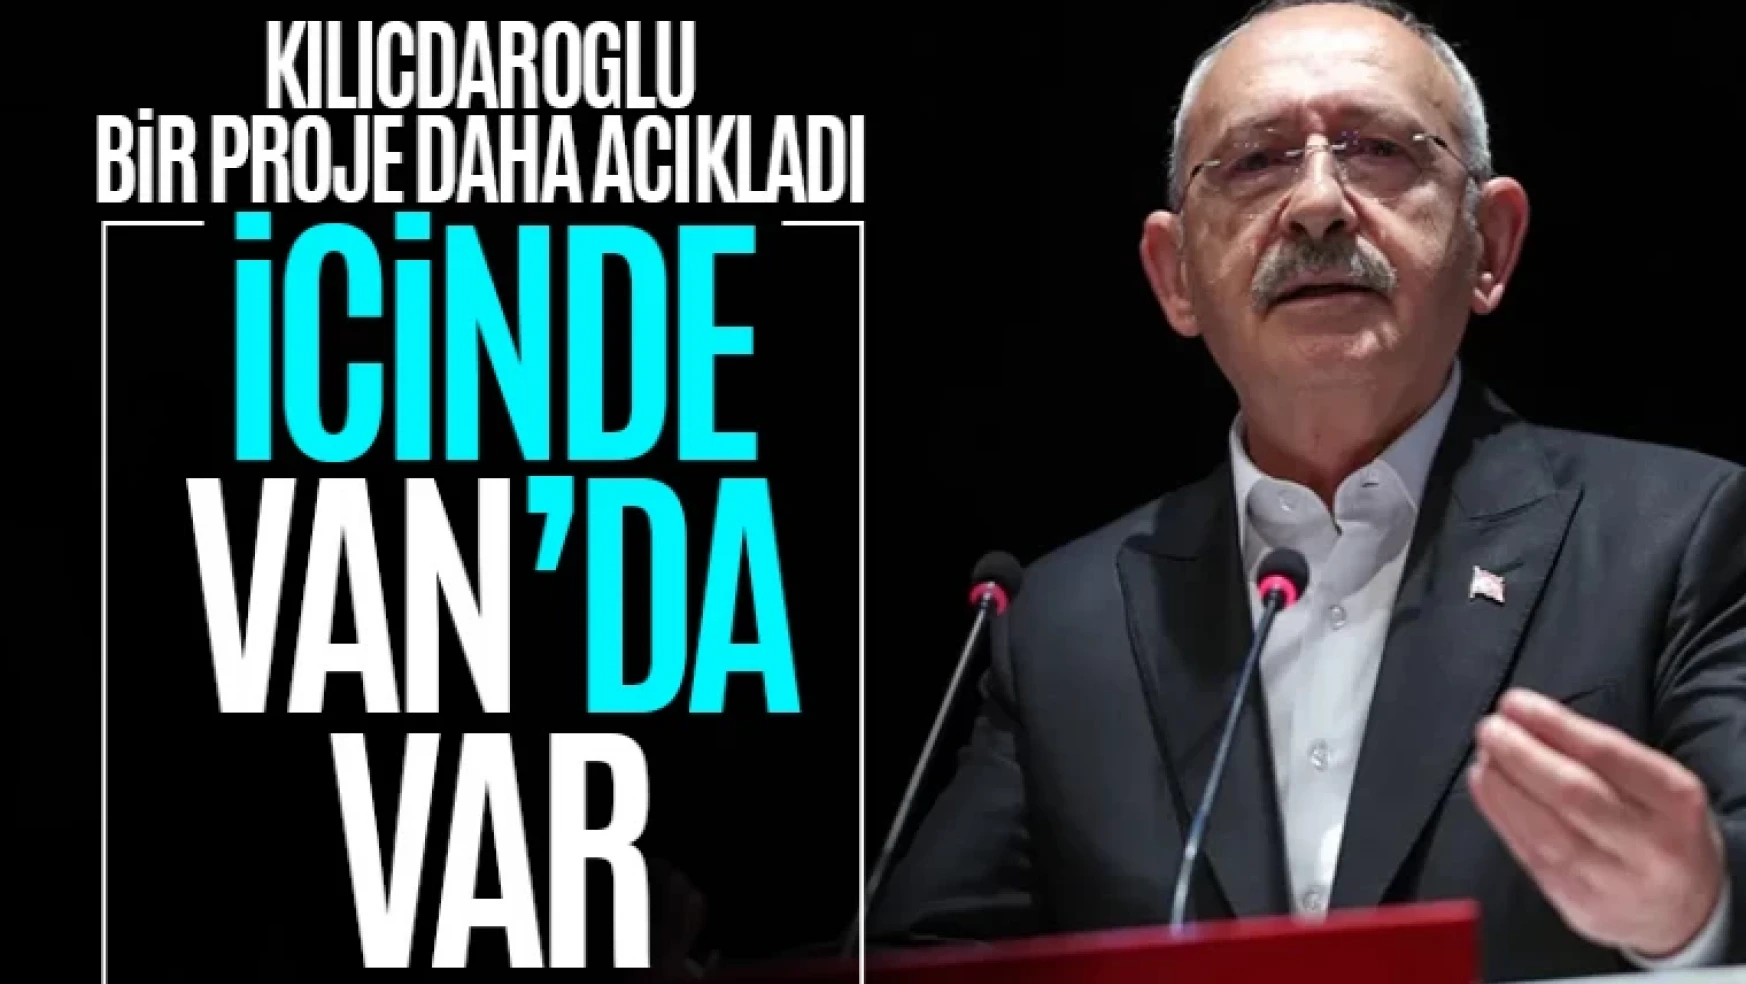 Kılıçdaroğlu, önemli projeyi açıkladı